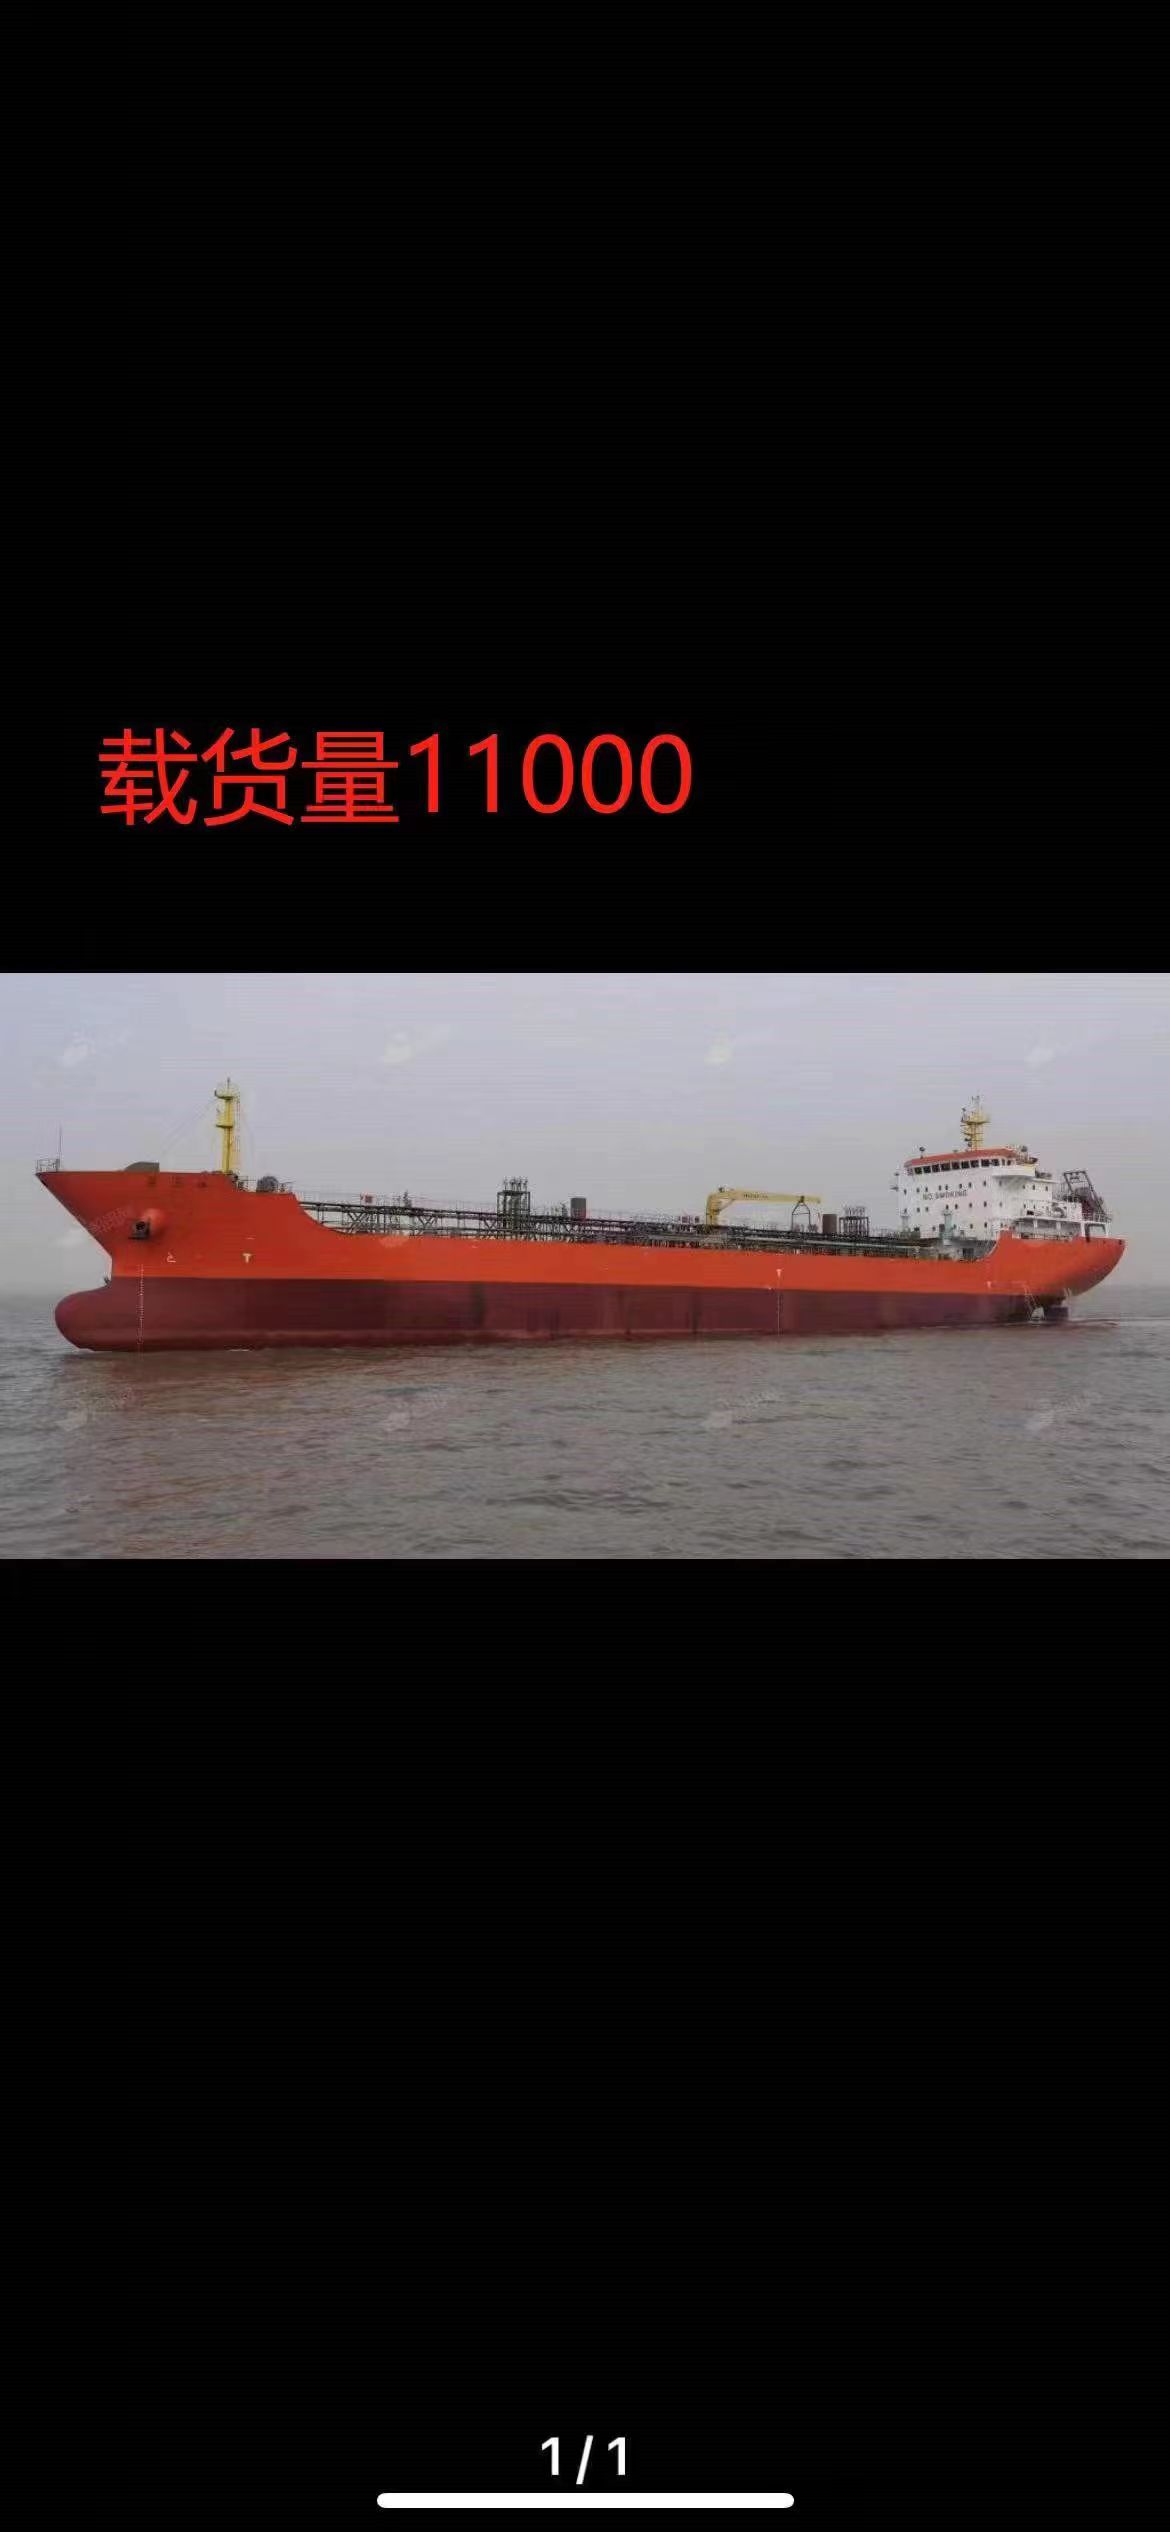 转让11000吨油船极品好船 ！懂货的来2018年4月江苏造